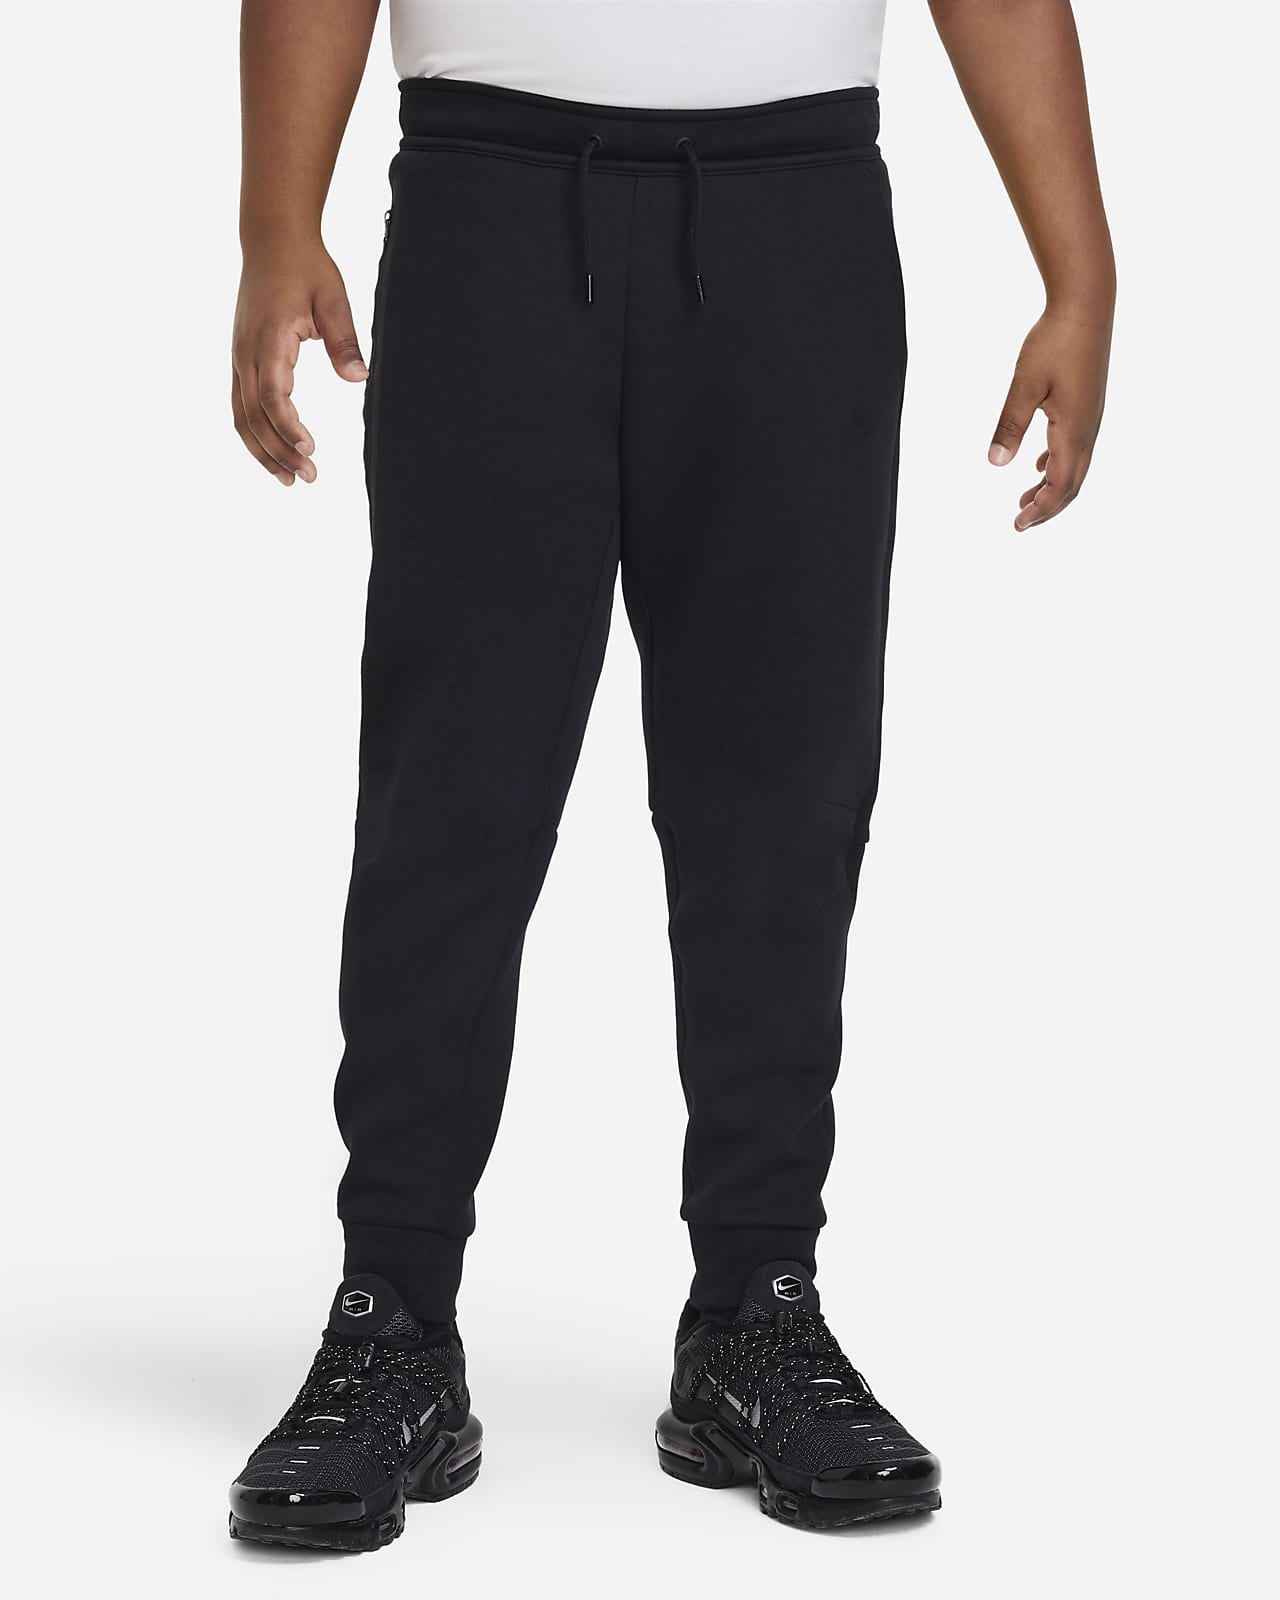 Kalhoty Nike Sportswear Tech Fleece pro větší děti (chlapce) (rozšířená velikost)